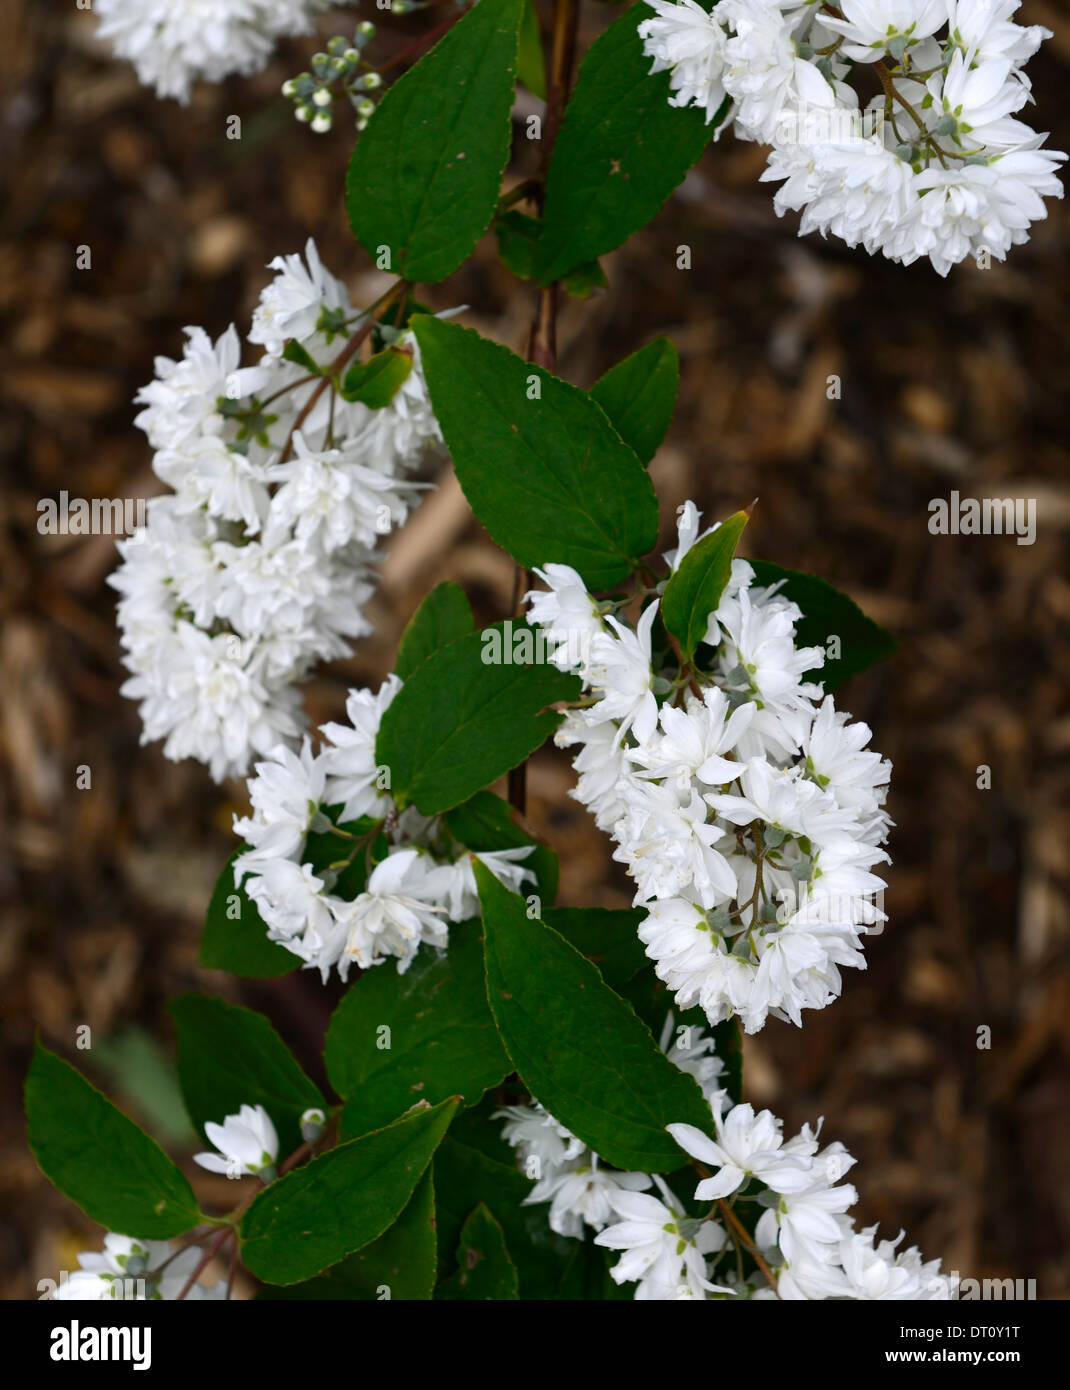 deutzia x magnifica white flowers flower flowering spring Deciduous shrub shrubs green leaves foliage deutzias Stock Photo